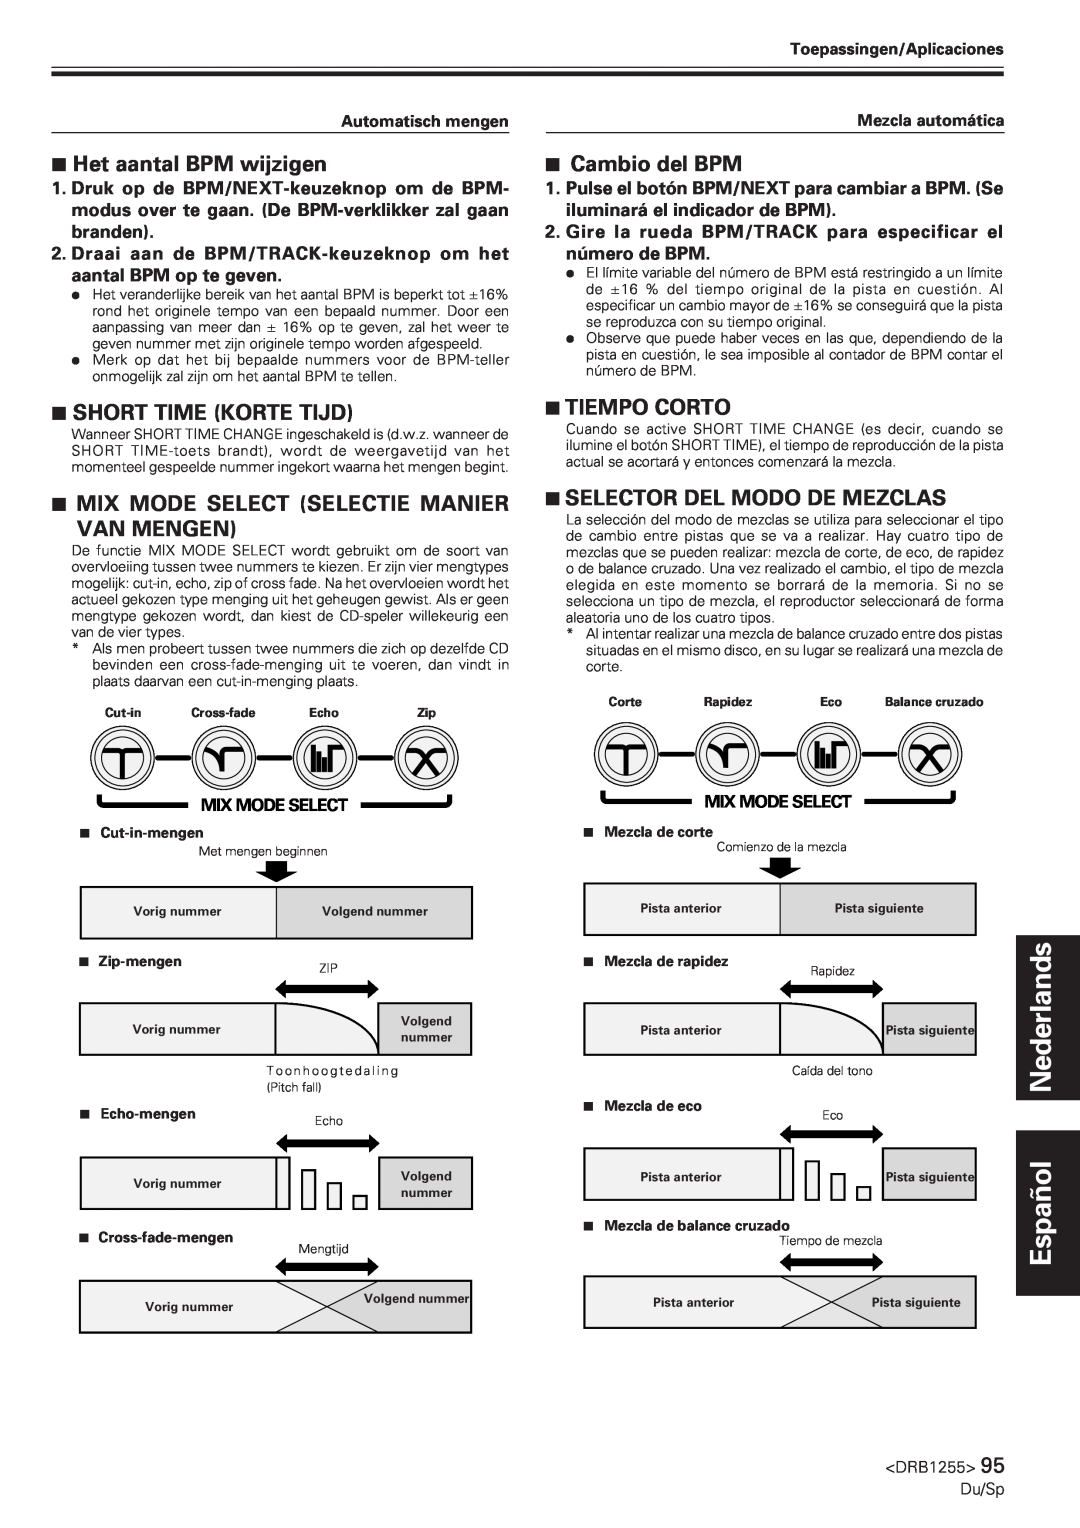 Pioneer CMX-5000 manual 7Het aantal BPM wijzigen, 7Cambio del BPM, 7SHORT TIME KORTE TIJD, 7TIEMPO CORTO, Nederlands 